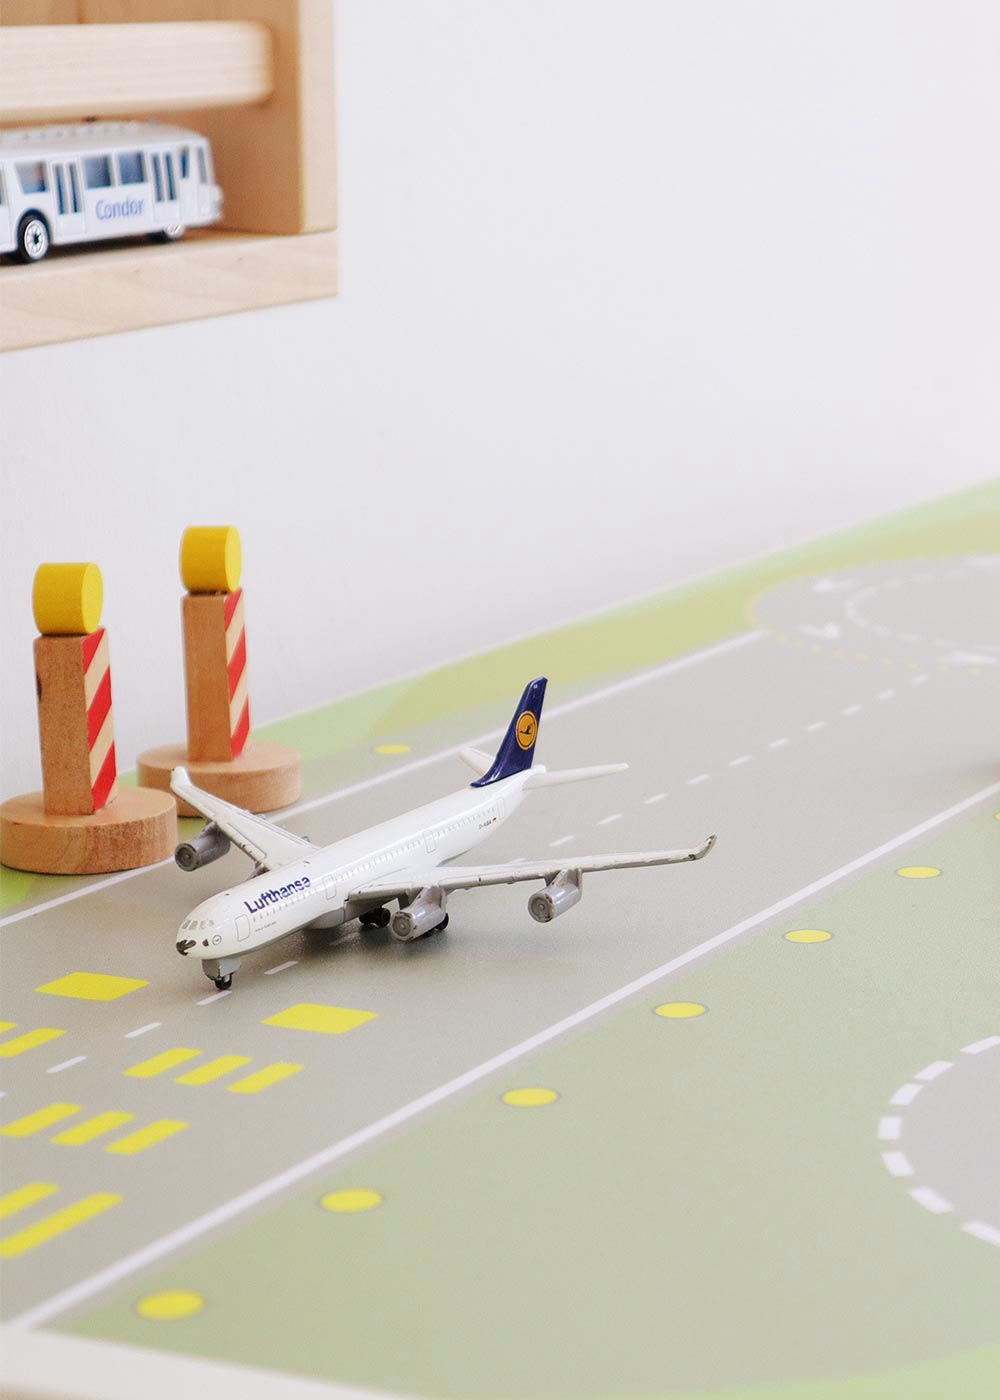 Ikea Dundra Spieltisch Landebahn Teilansicht Flugzeug